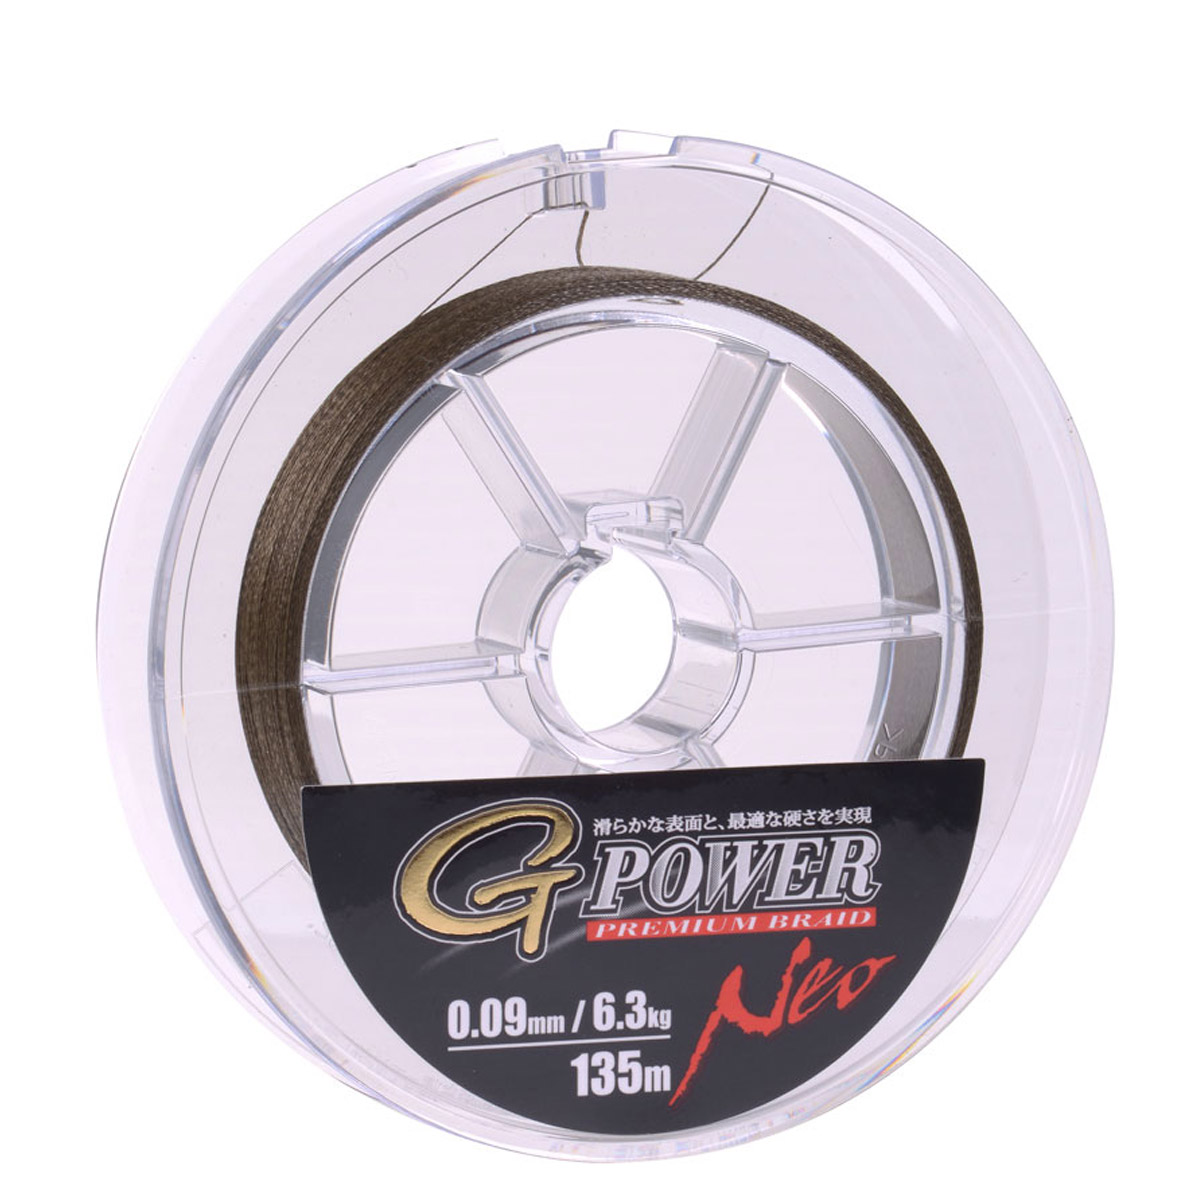 Gamakatsu G-Power Premium Braid Green -  0.16 mm